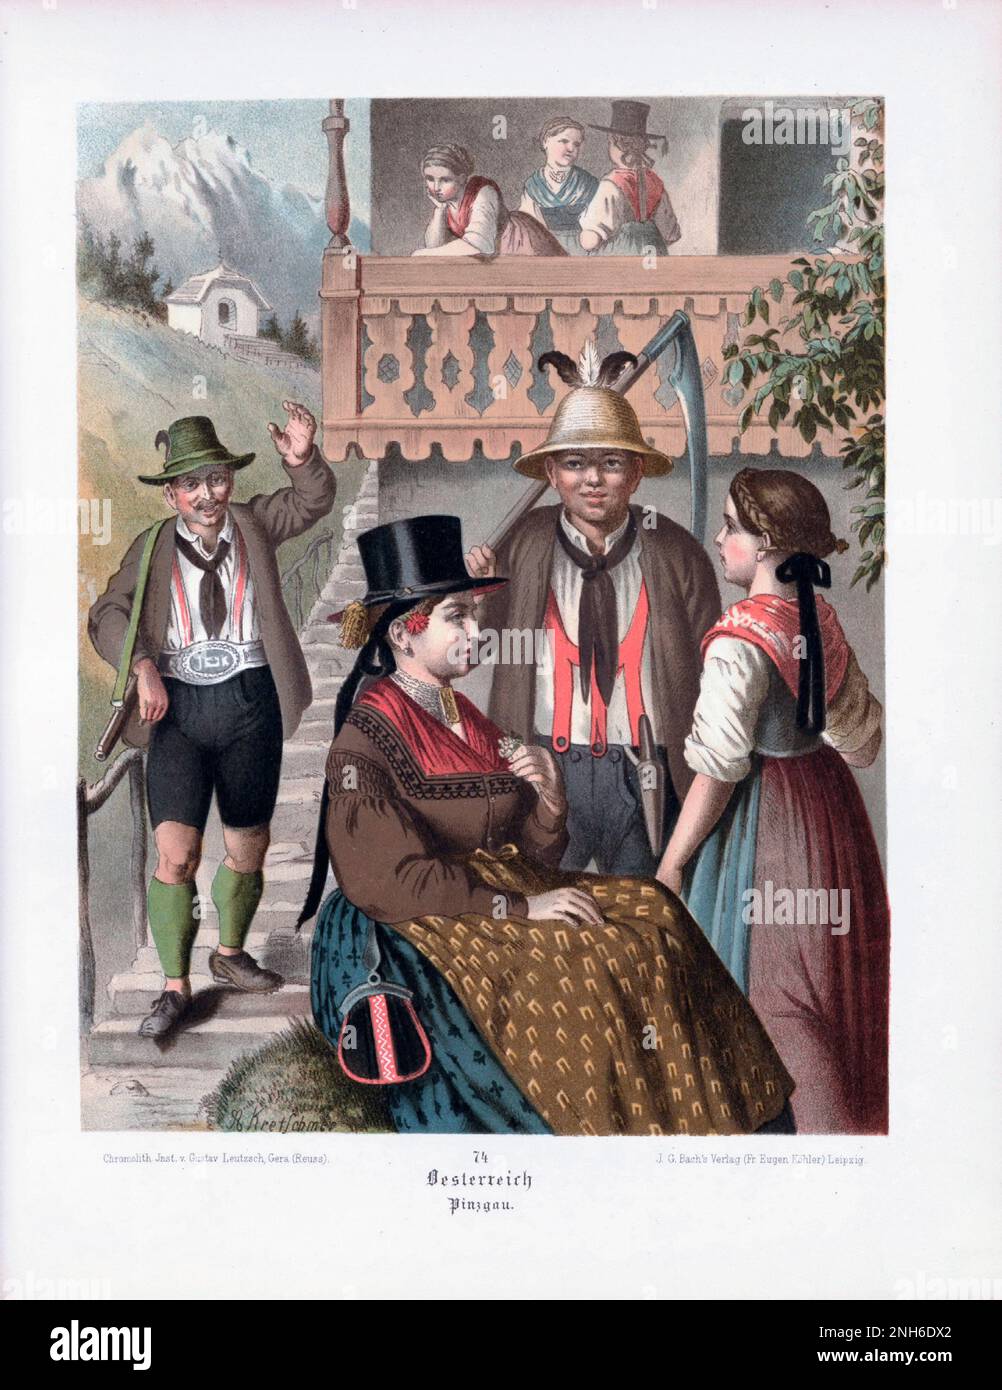 Disfraz folclórico alemán. Austria (Alemania: Österreich), Pinzgau. litografía del siglo 19th. Foto de stock